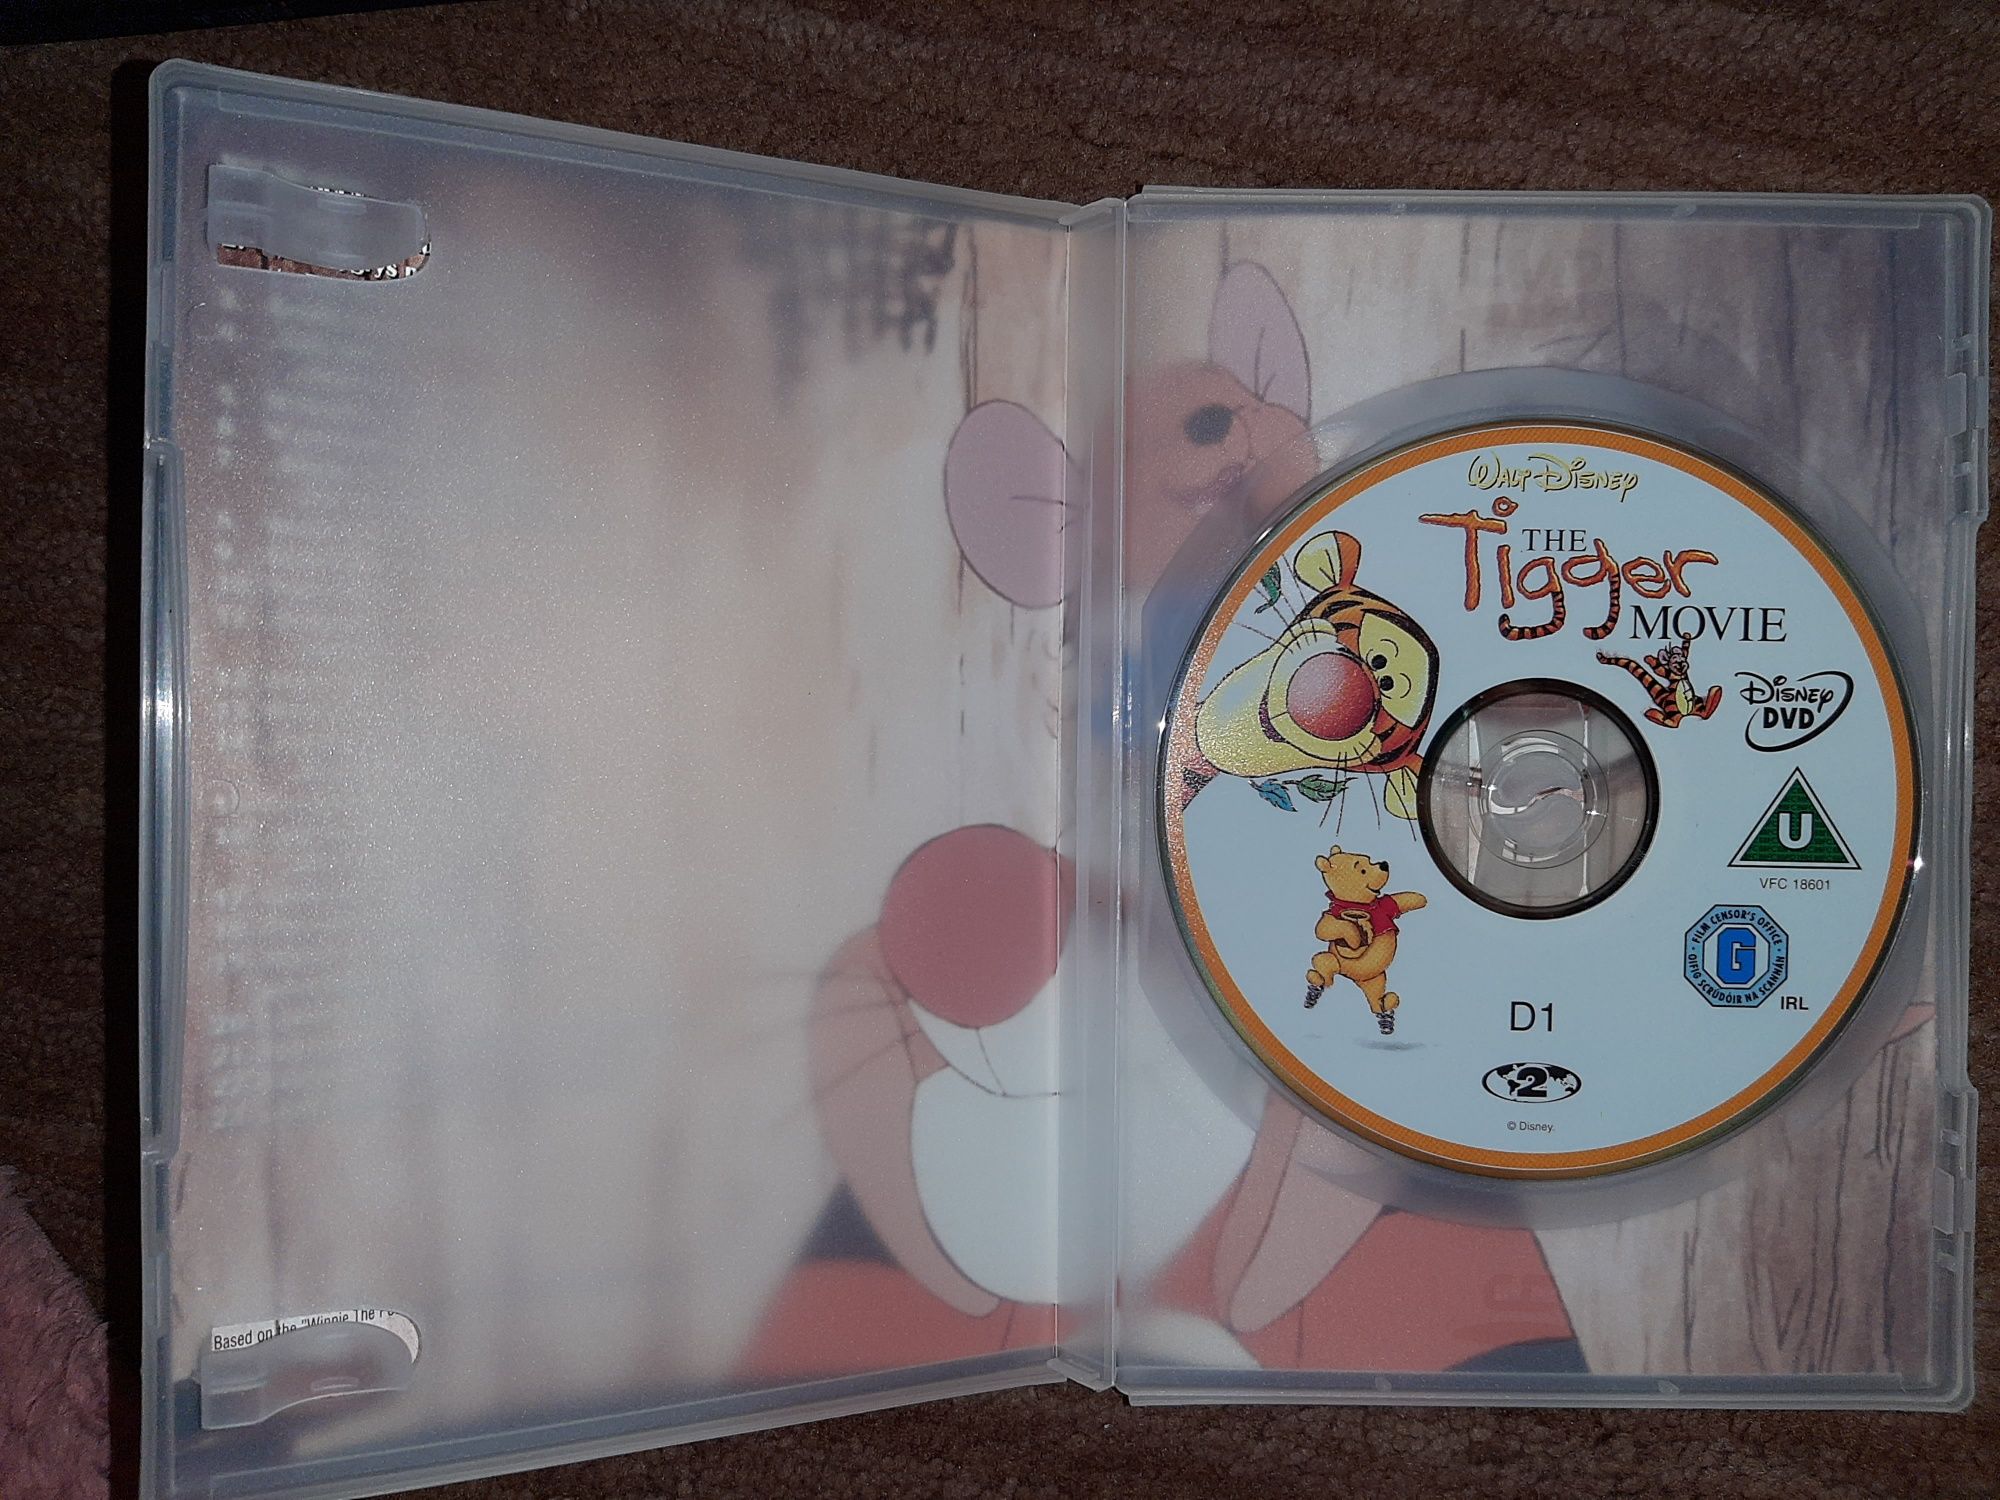 DVD serii Walt Disney - Tygrys i przyjaciele